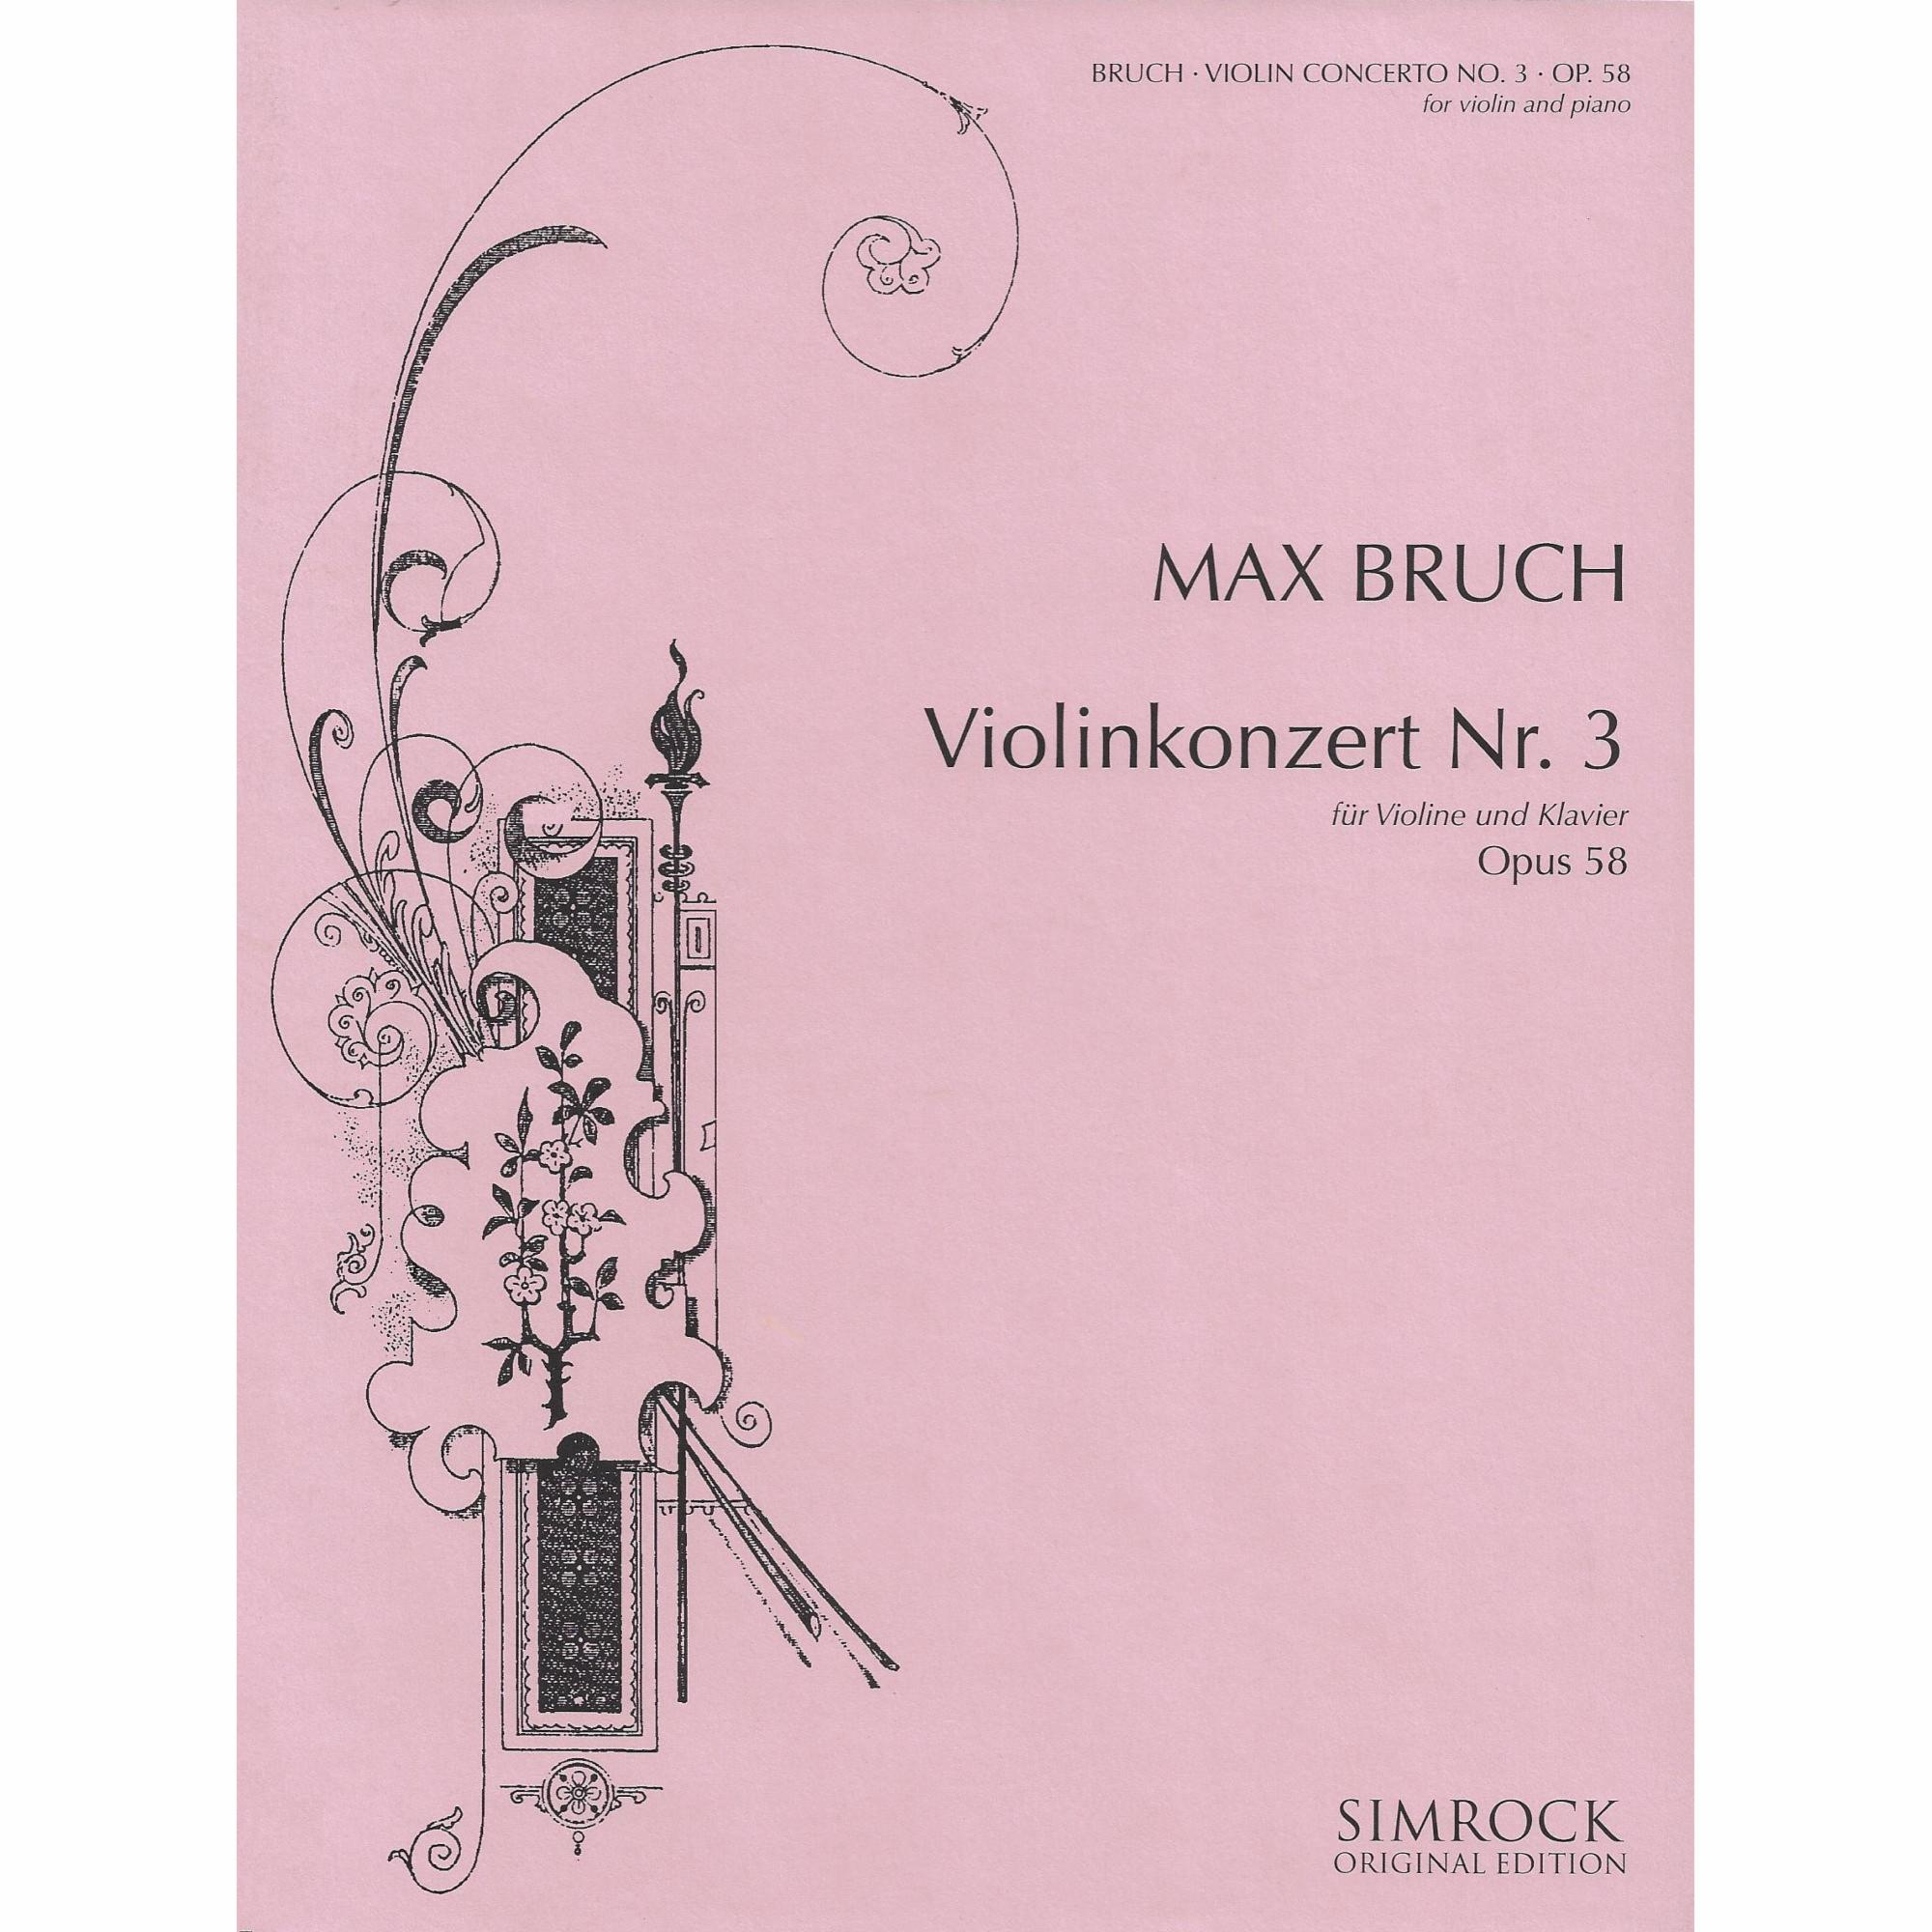 Bruch -- Violin Concerto No. 3, Op. 58